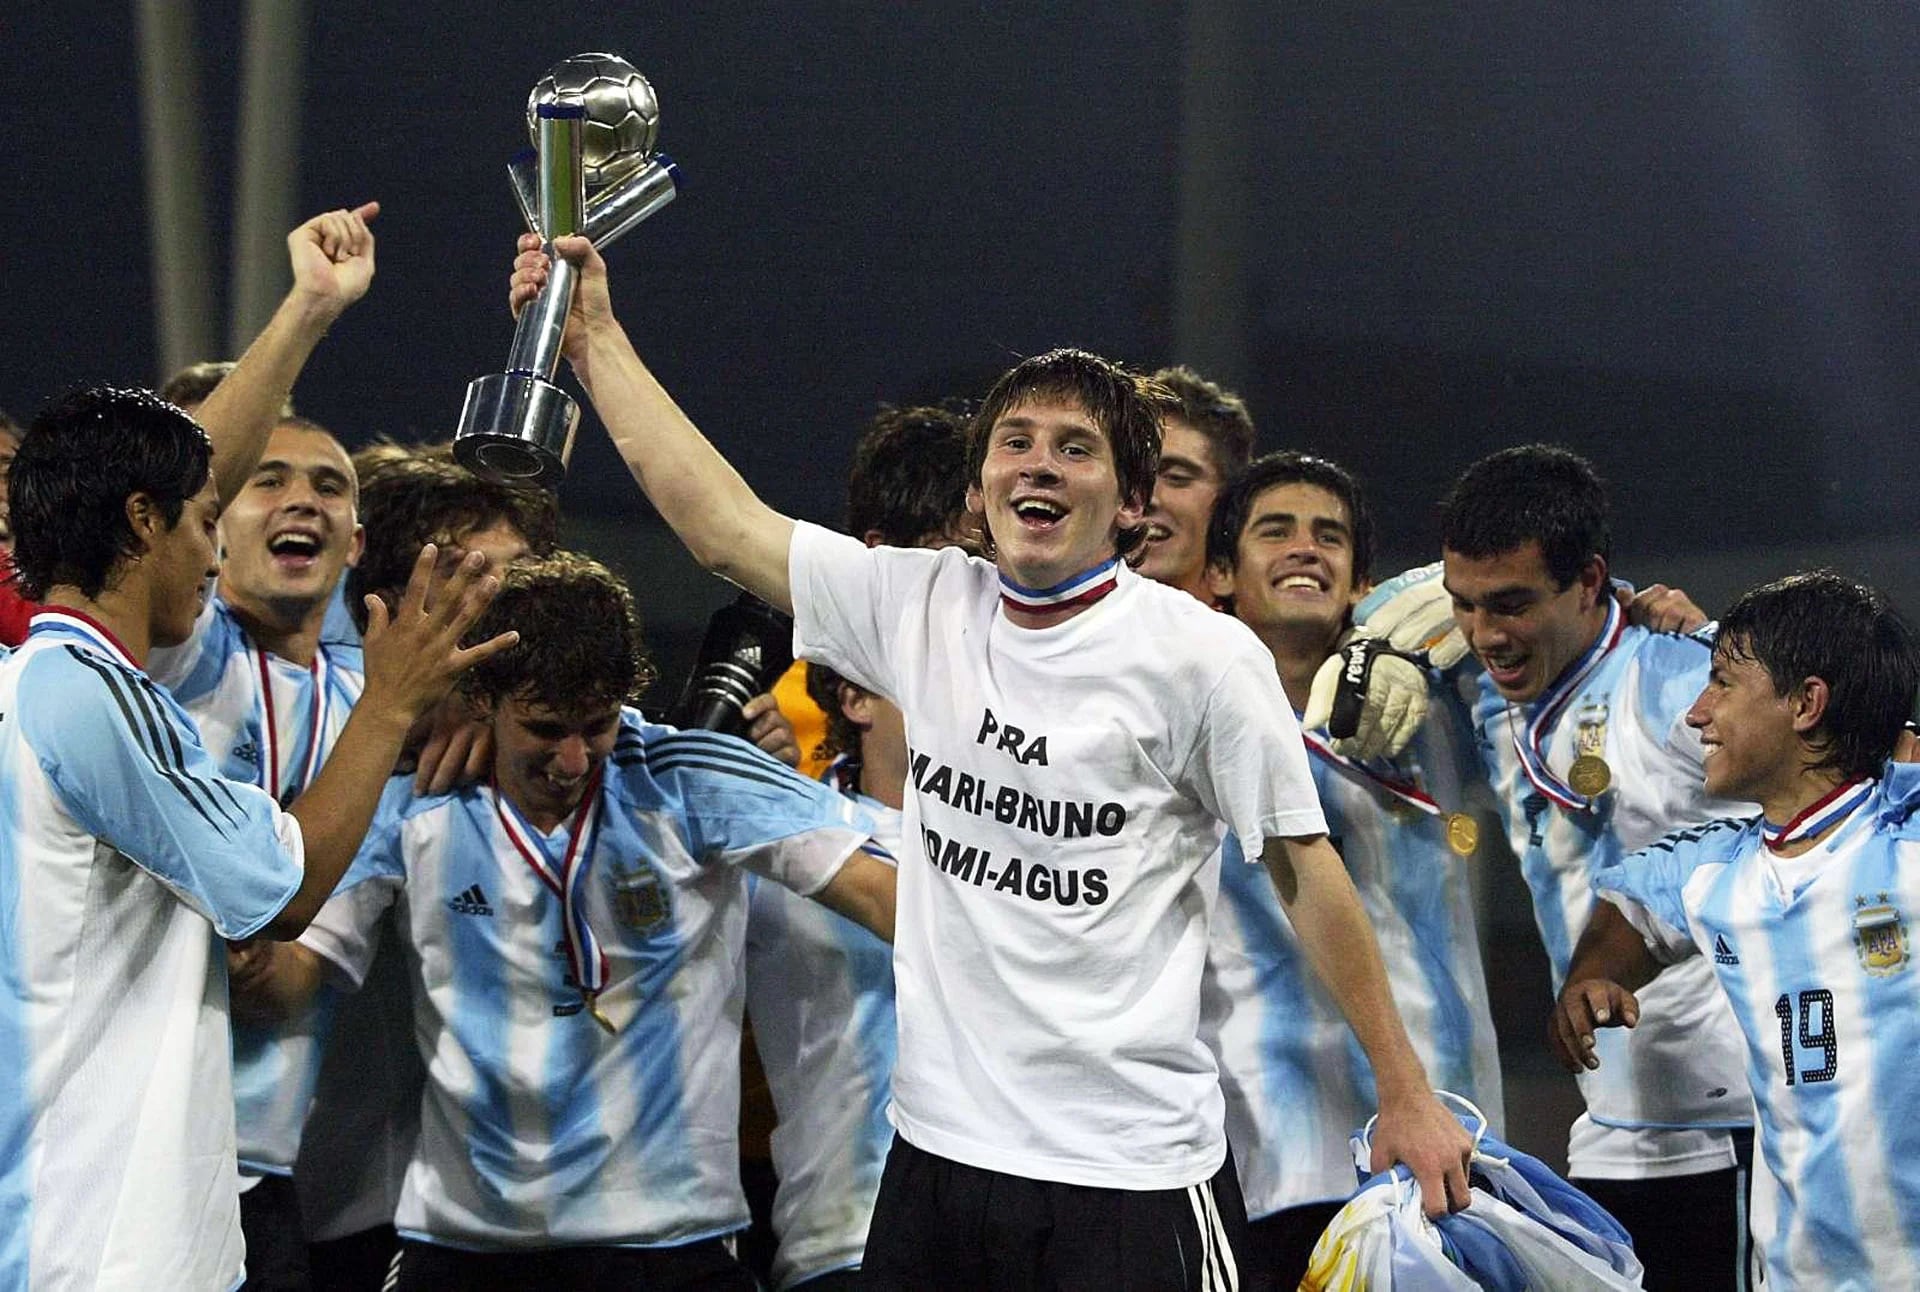 Los campeones mundiales Sub 20 en Holanda: qué es de la vida de los  compañeros de Lionel Messi